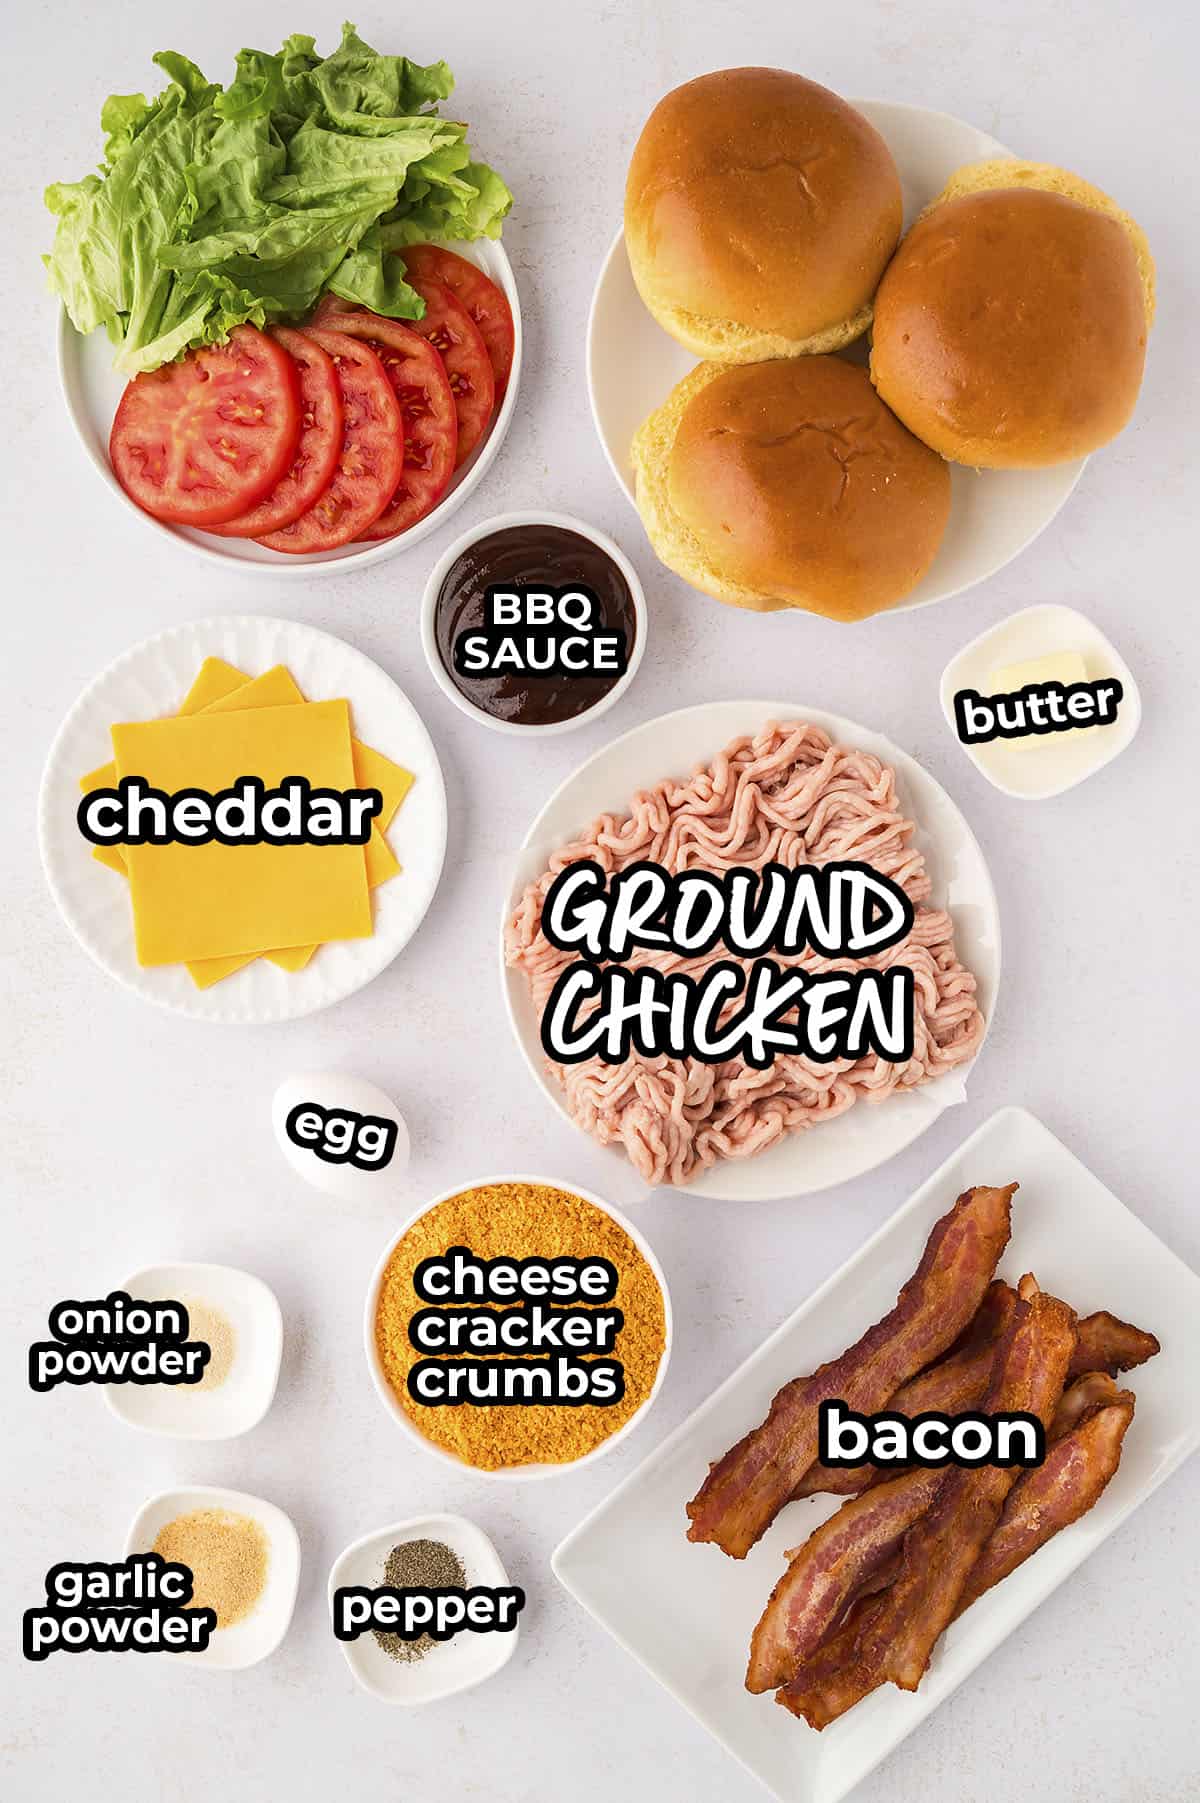 Ingredients for ground chicken burgers.